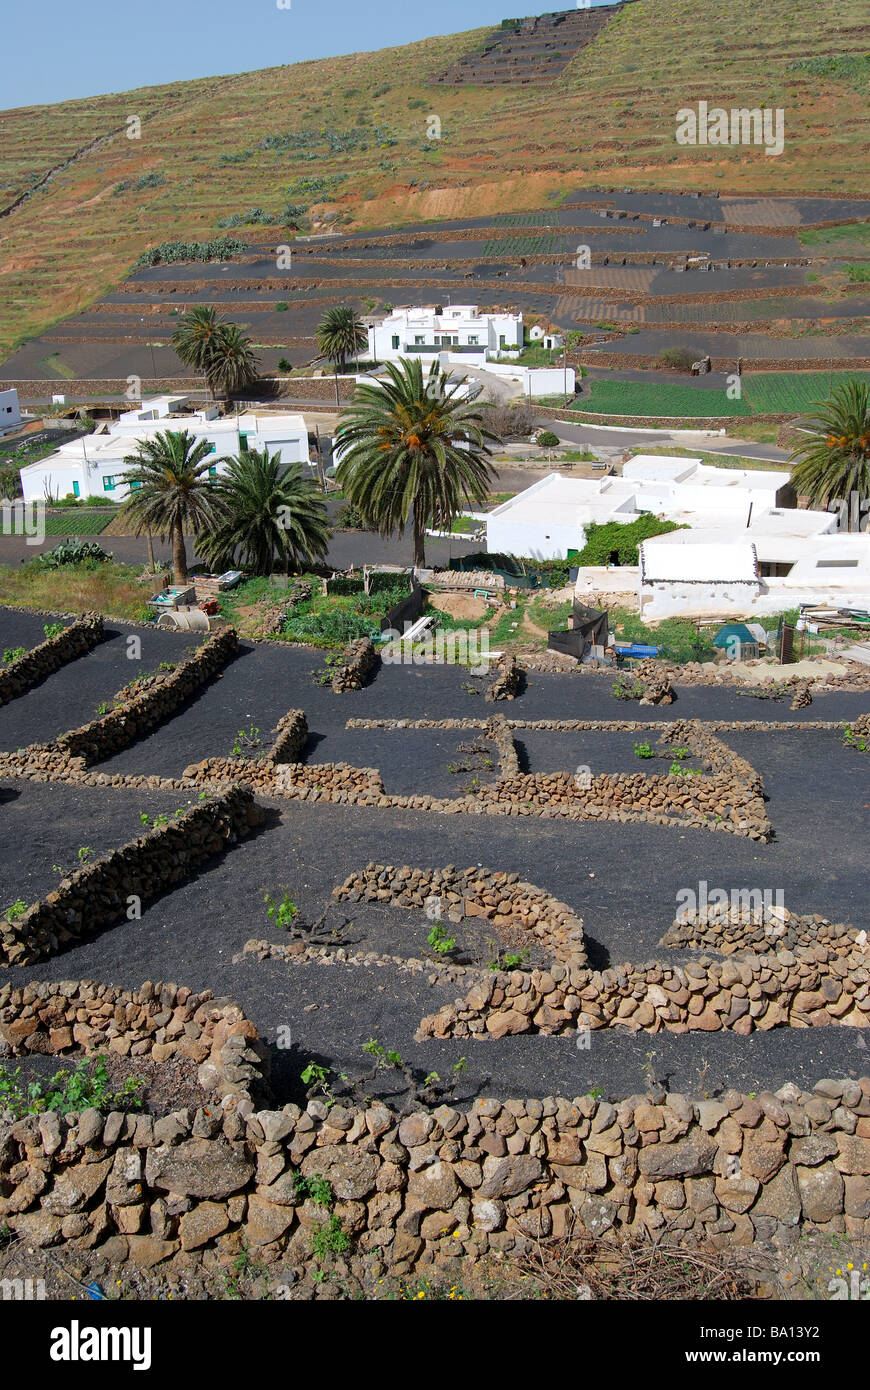 Colture in rifugi vulcanica, Los Valles, Lanzarote, Isole Canarie, Spagna Foto Stock